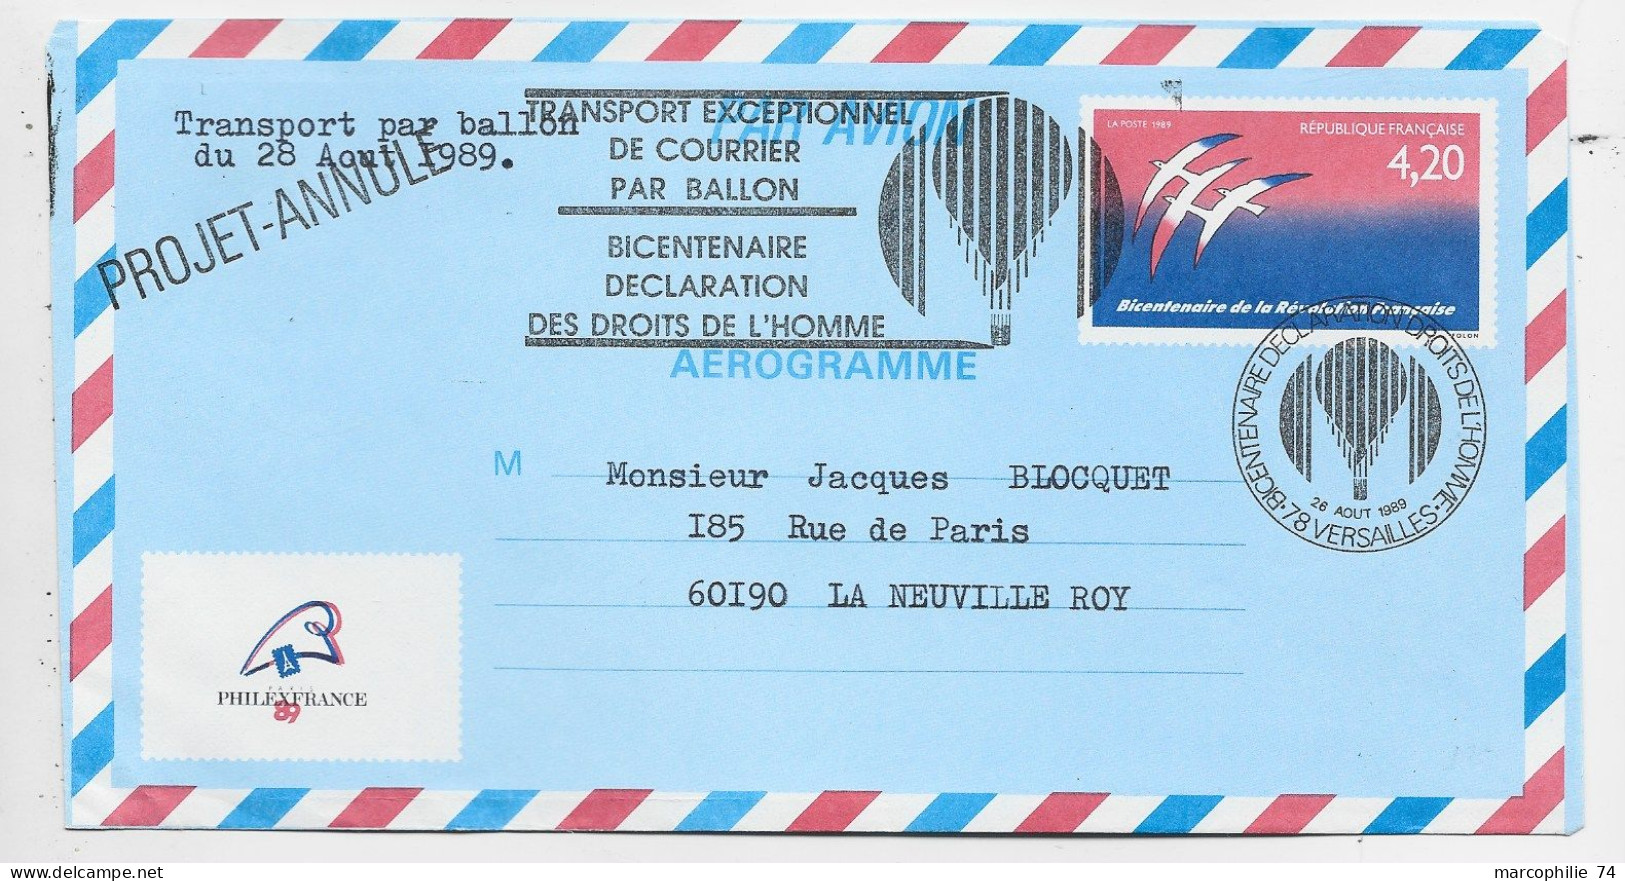 FRANCE AEROGRAMME 4.20 FOLON ENVELOPPE COVER TRANSPORT EXCEPTIONNEL PAR BALLON 1989 PHILEX PROJET ANNULE - Aérogrammes